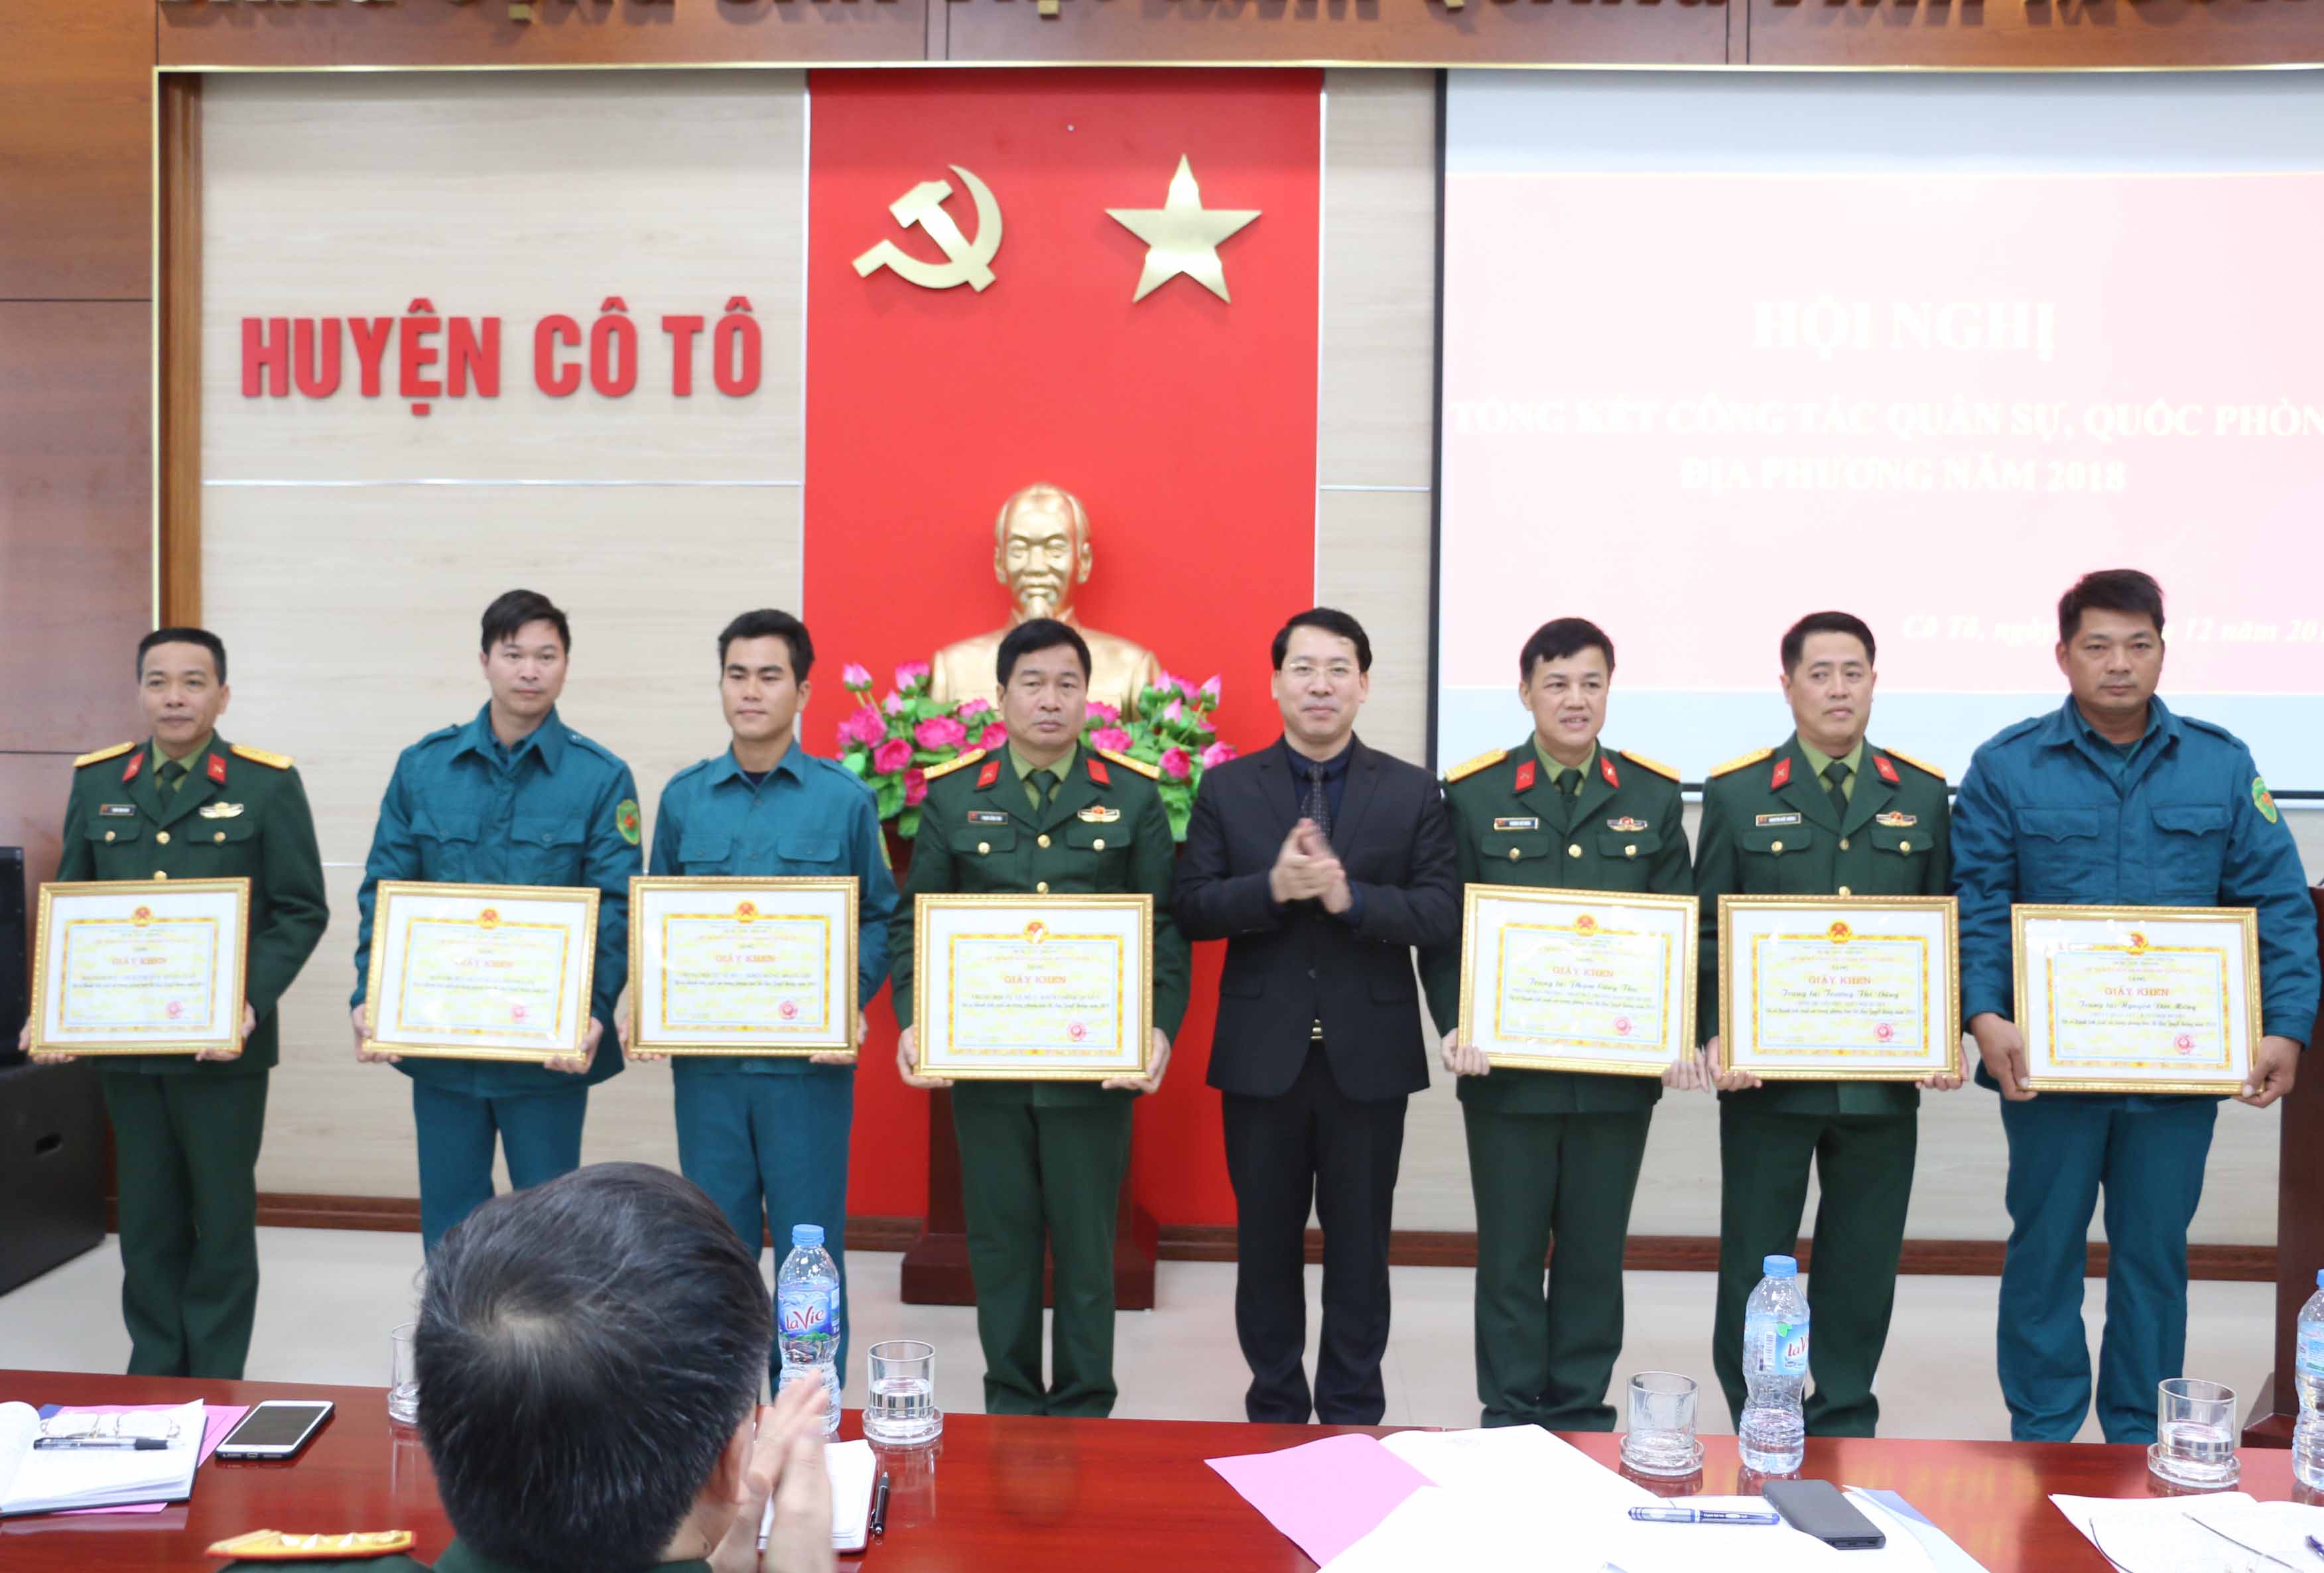 Bí thư Huyện ủy, Chủ tịch UBND huyện Trần Như Long tặng giấy khen  cho các tập thể và cá nhân đã có thành tích xuất sắc trong phong trào thi đua Quyết thắng năm 2018.